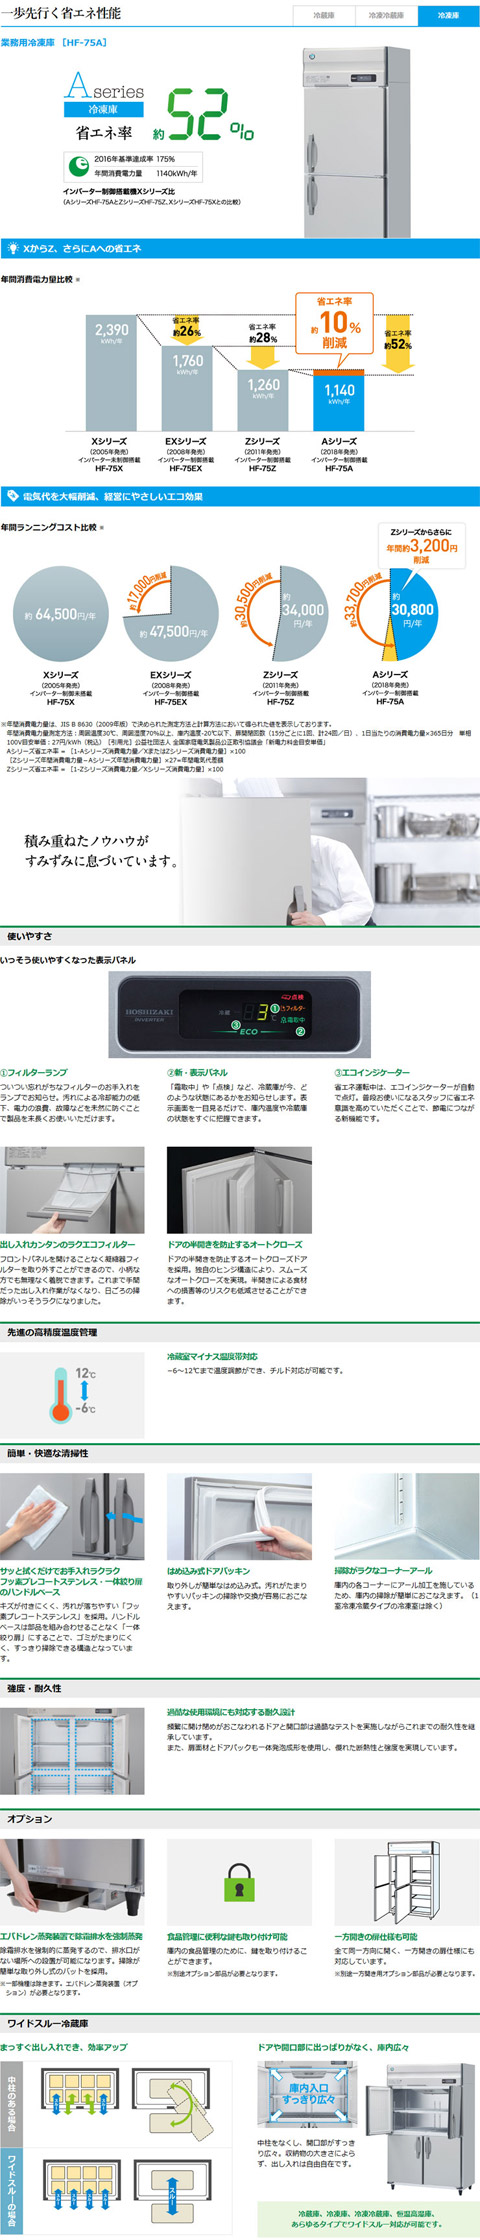 ホシザキ・星崎 縦型インバーター冷凍庫 型式：HF-120A3-2-ML 送料無料 （メーカーより直送）メーカー保証付 r0306046  空調店舗厨房センター 通販 